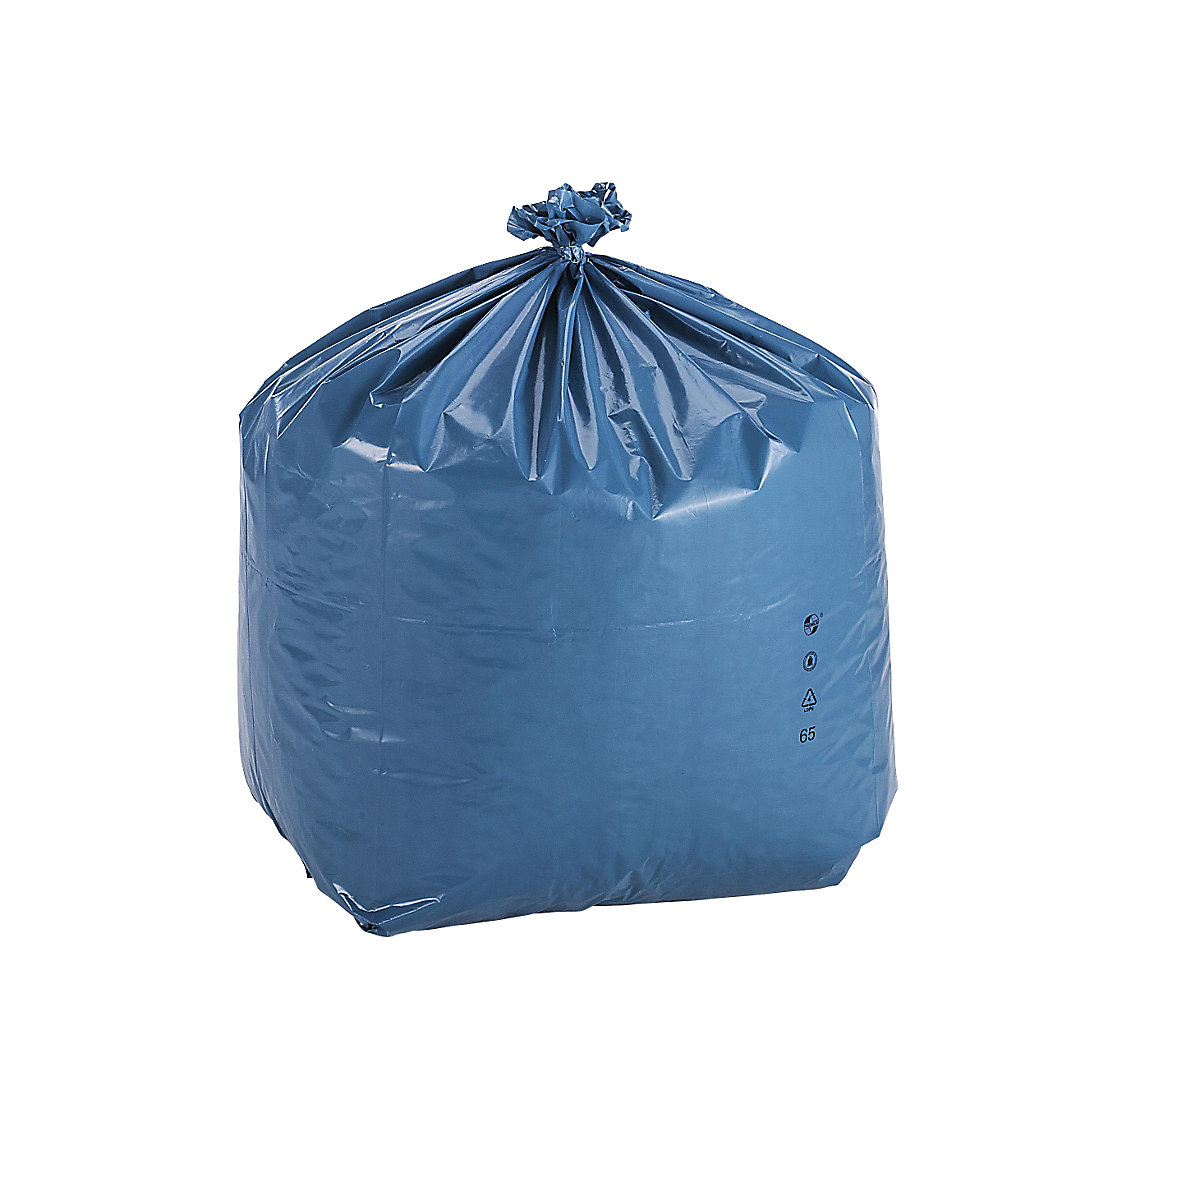 Nagy térfogatú hulladékgyűjtő zsákok, PREMIUM, LDPE